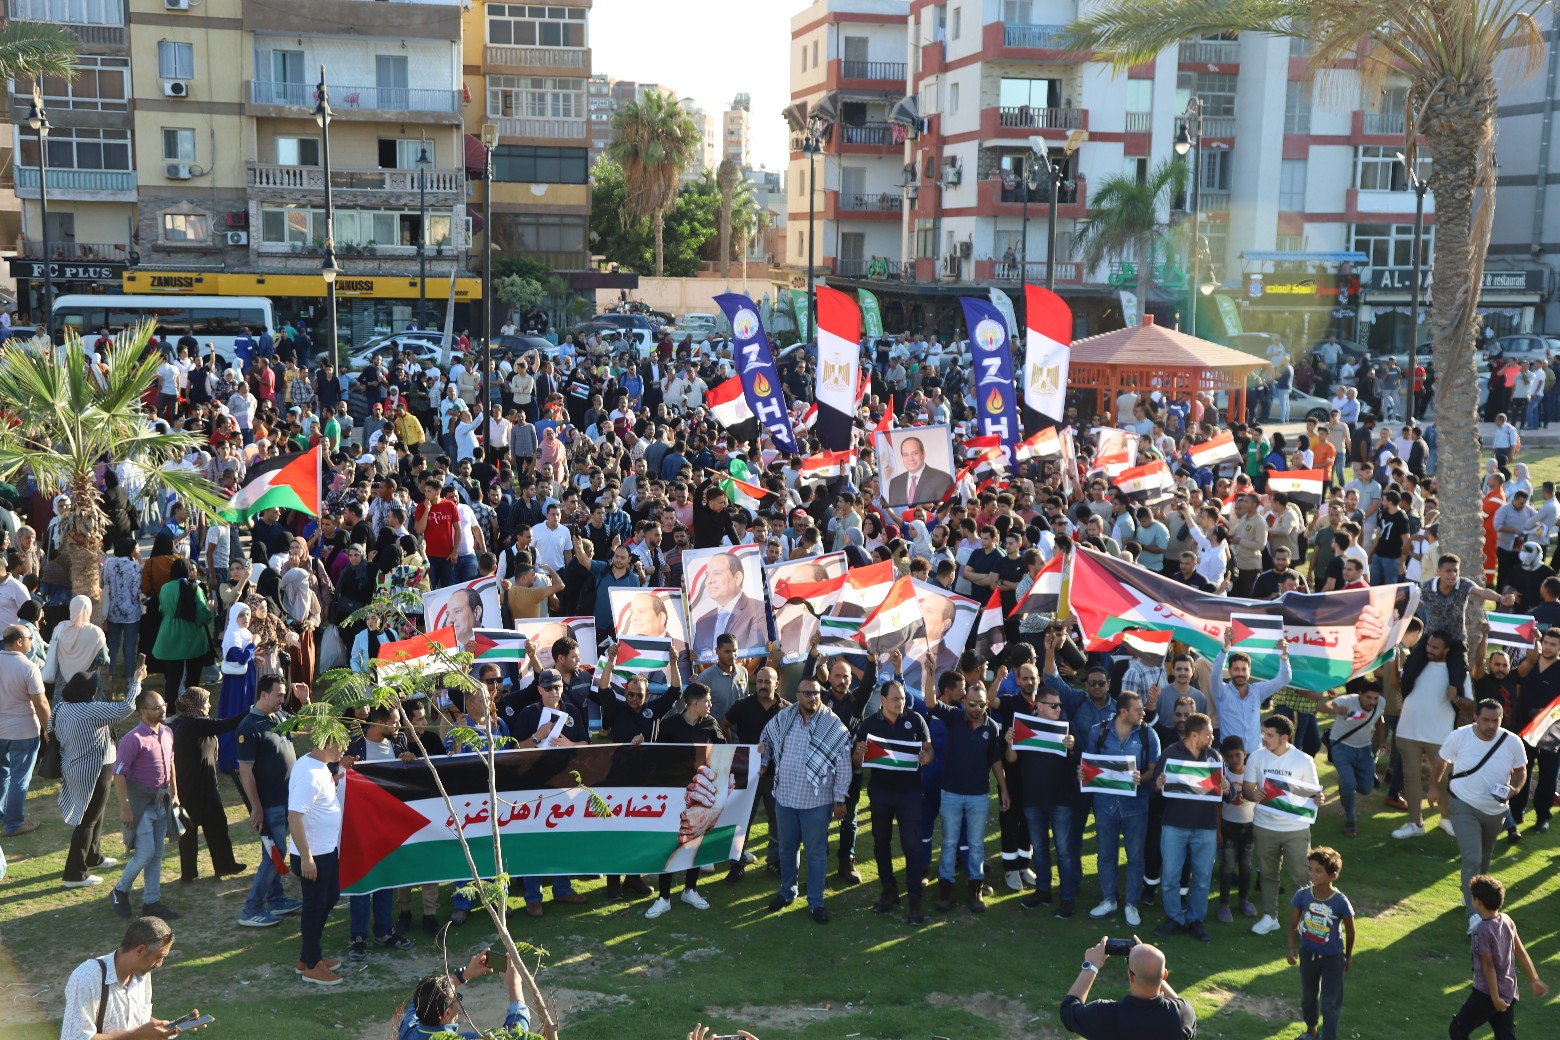 جانب من المسيرة ودعم القضية الفلسطينية وقرارات الرئيس برفض التهجير (7)